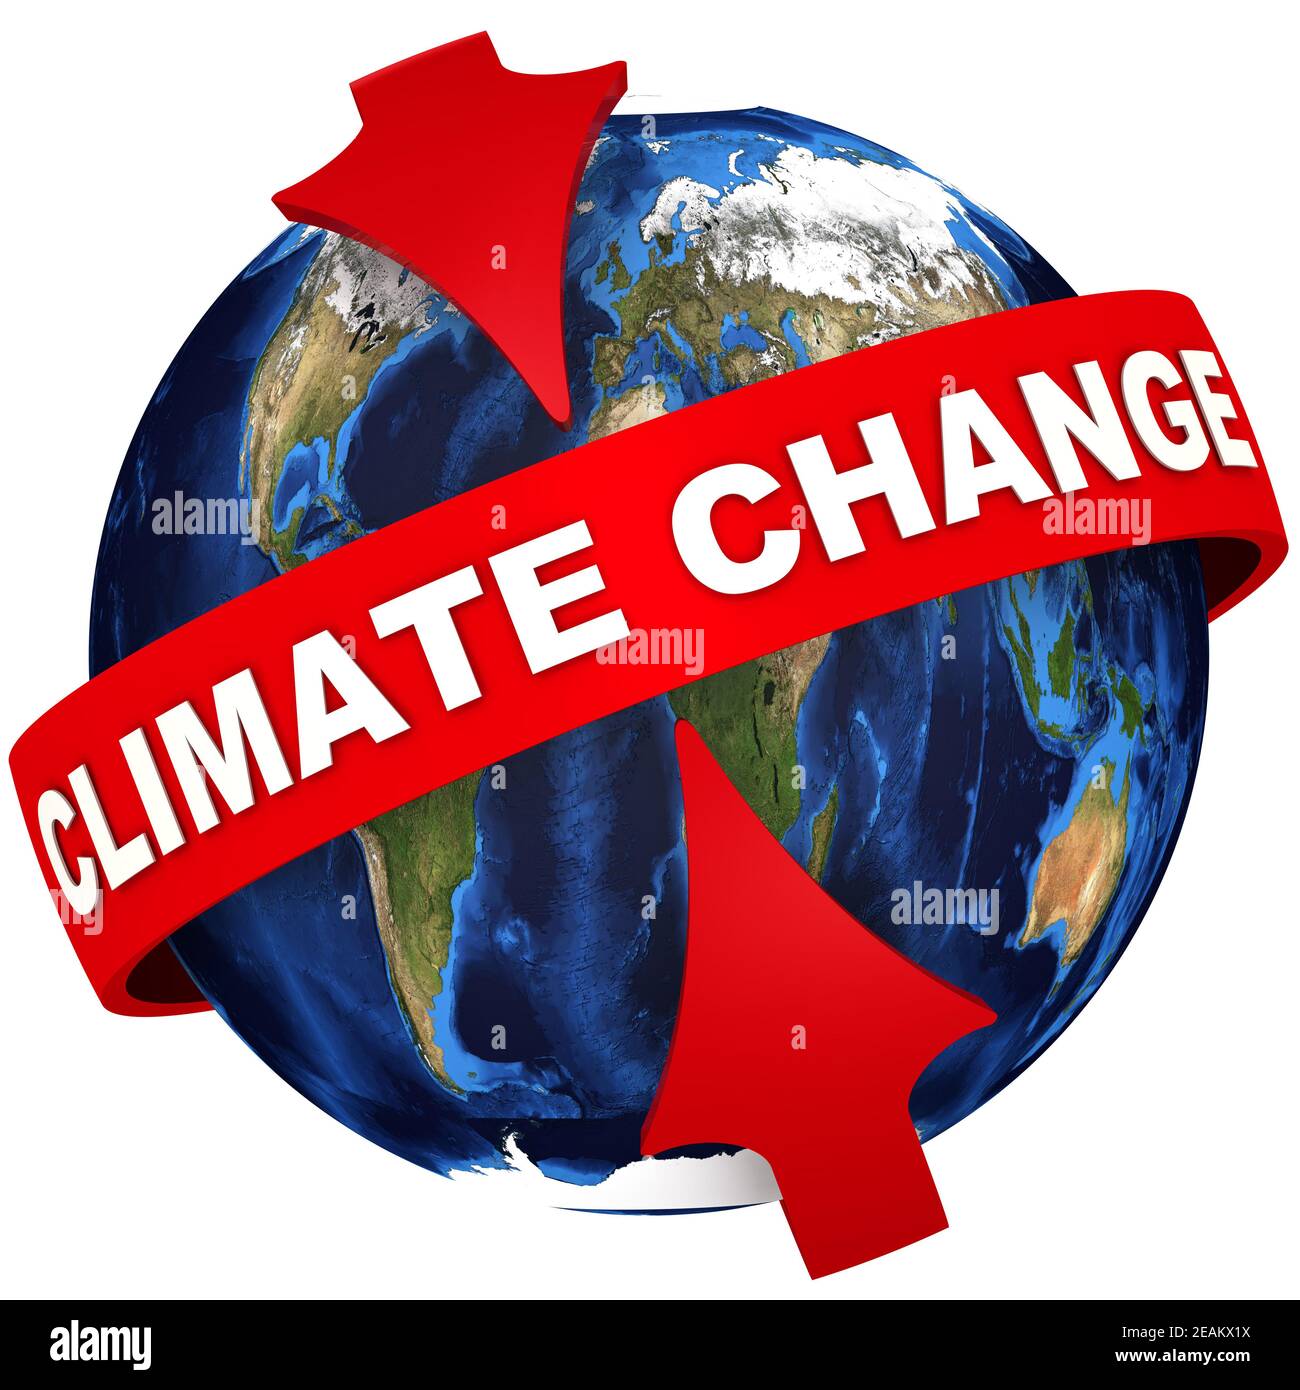 Sự biến đổi khí hậu toàn cầu là một chủ đề đang được quan tâm rộng rãi toàn cầu. Bạn có muốn hiểu rõ về những thay đổi đang diễn ra và những tác động của nó đến cuộc sống của chúng ta không? Hãy xem ảnh liên quan đến chủ đề này và tìm hiểu thêm.